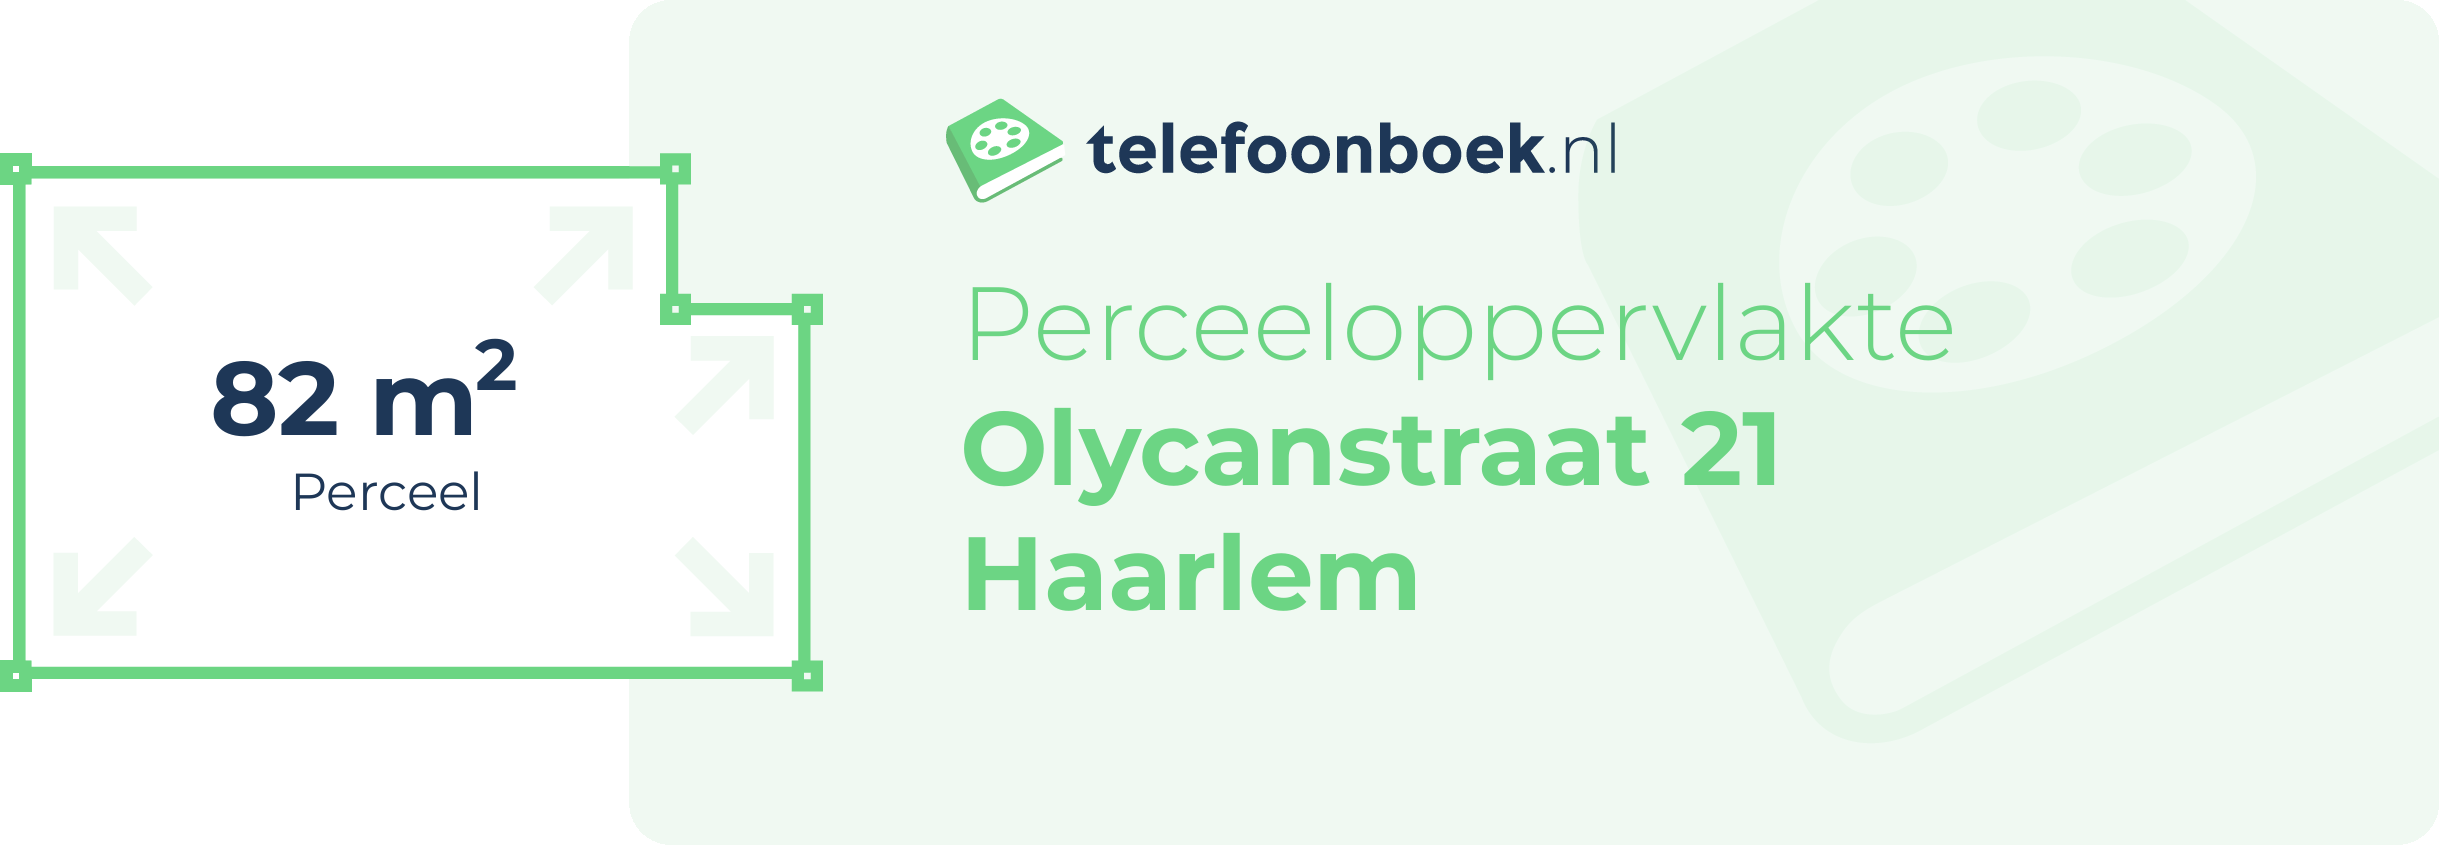 Perceeloppervlakte Olycanstraat 21 Haarlem